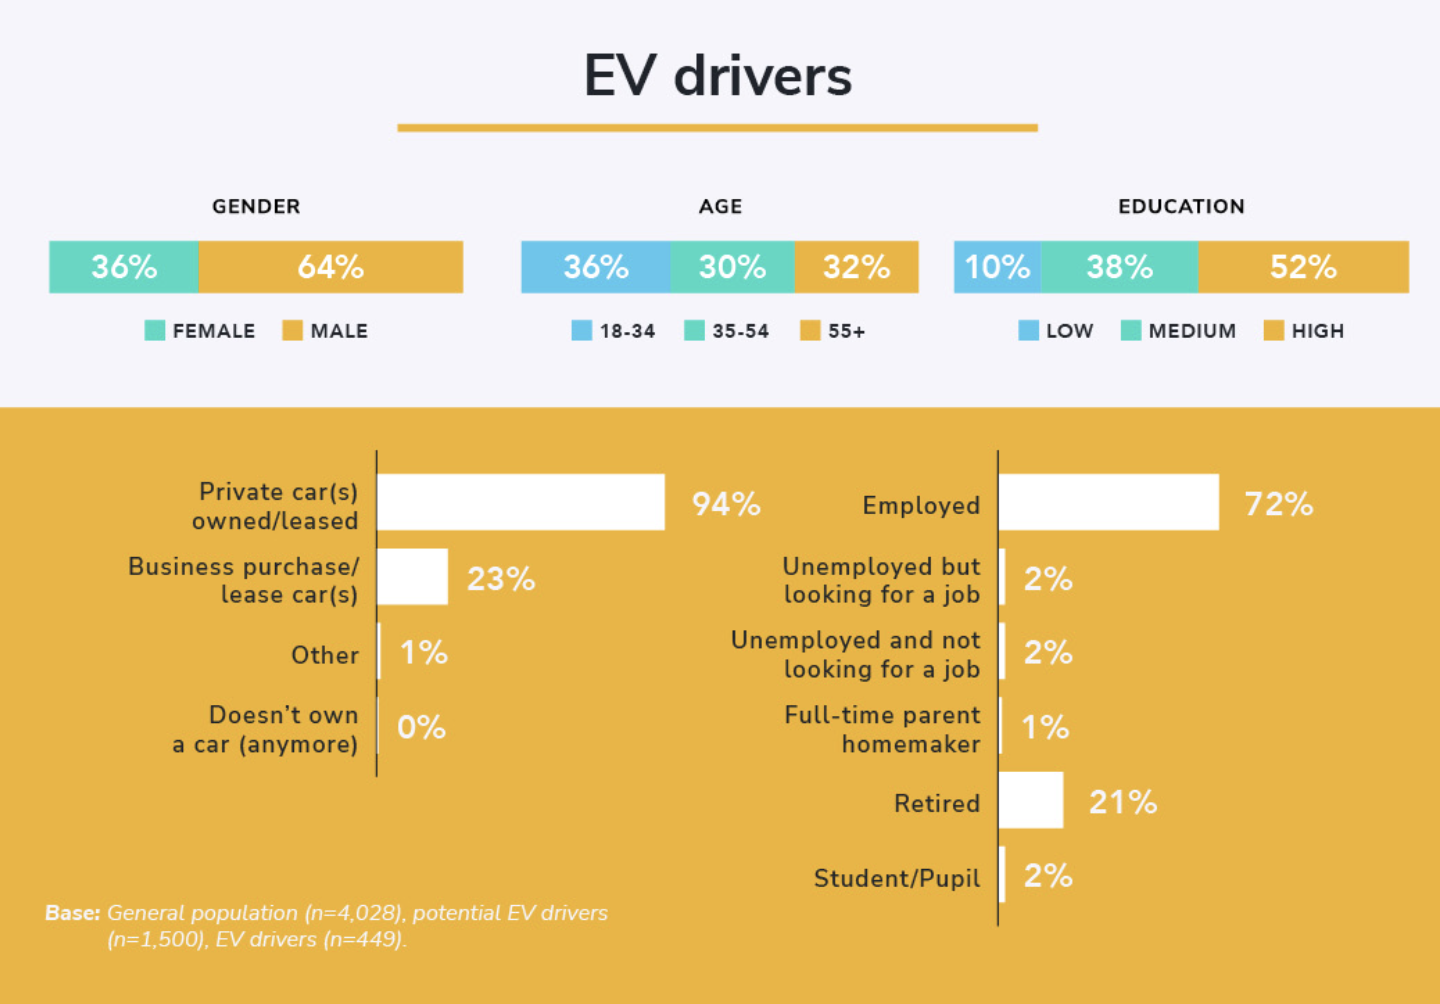 Une infographie du baromètre EVBox de la mobilité 2022 montrant les données démographiques des conducteurs actuels de VE. 36% des conducteurs de VE sont des femmes, tandis que 64% sont des hommes. 36 % des conducteurs de VE ont entre 18 et 24 ans, 30 % entre 35 et 54 ans et 32 % ont 55 ans et plus. 10 % des conducteurs de VE ont un faible niveau d'éducation, 38 % un niveau d'éducation moyen et 52 % un niveau d'éducation élevé. 94 % des conducteurs de VE possèdent une voiture privée ou louée, tandis que 23 % utilisent une voiture de fonction. 72% des conducteurs de VE ont un emploi, 2% sont au chômage mais à la recherche d'un emploi, 2% sont au chômage et ne cherchent pas d'emploi, 1% sont des parents au foyer à plein temps, 21% sont retraités et 2% sont des étudiants/élèves. La base de l'enquête est la suivante : population générale n=4 028.